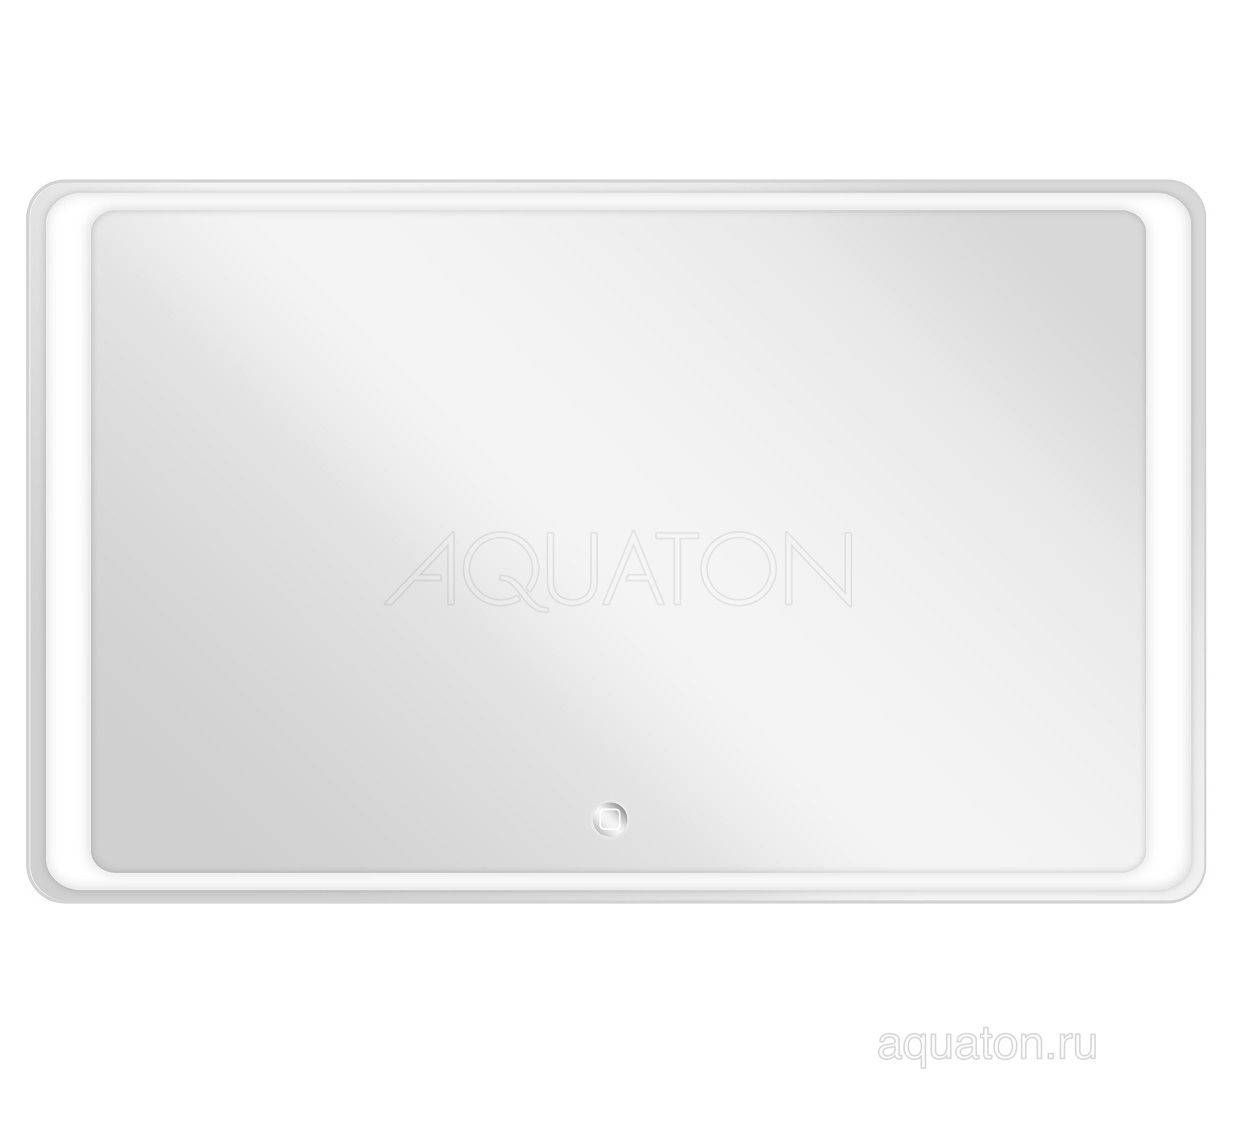 Зеркало Aquaton Соул 1200x700 1A219502SU010